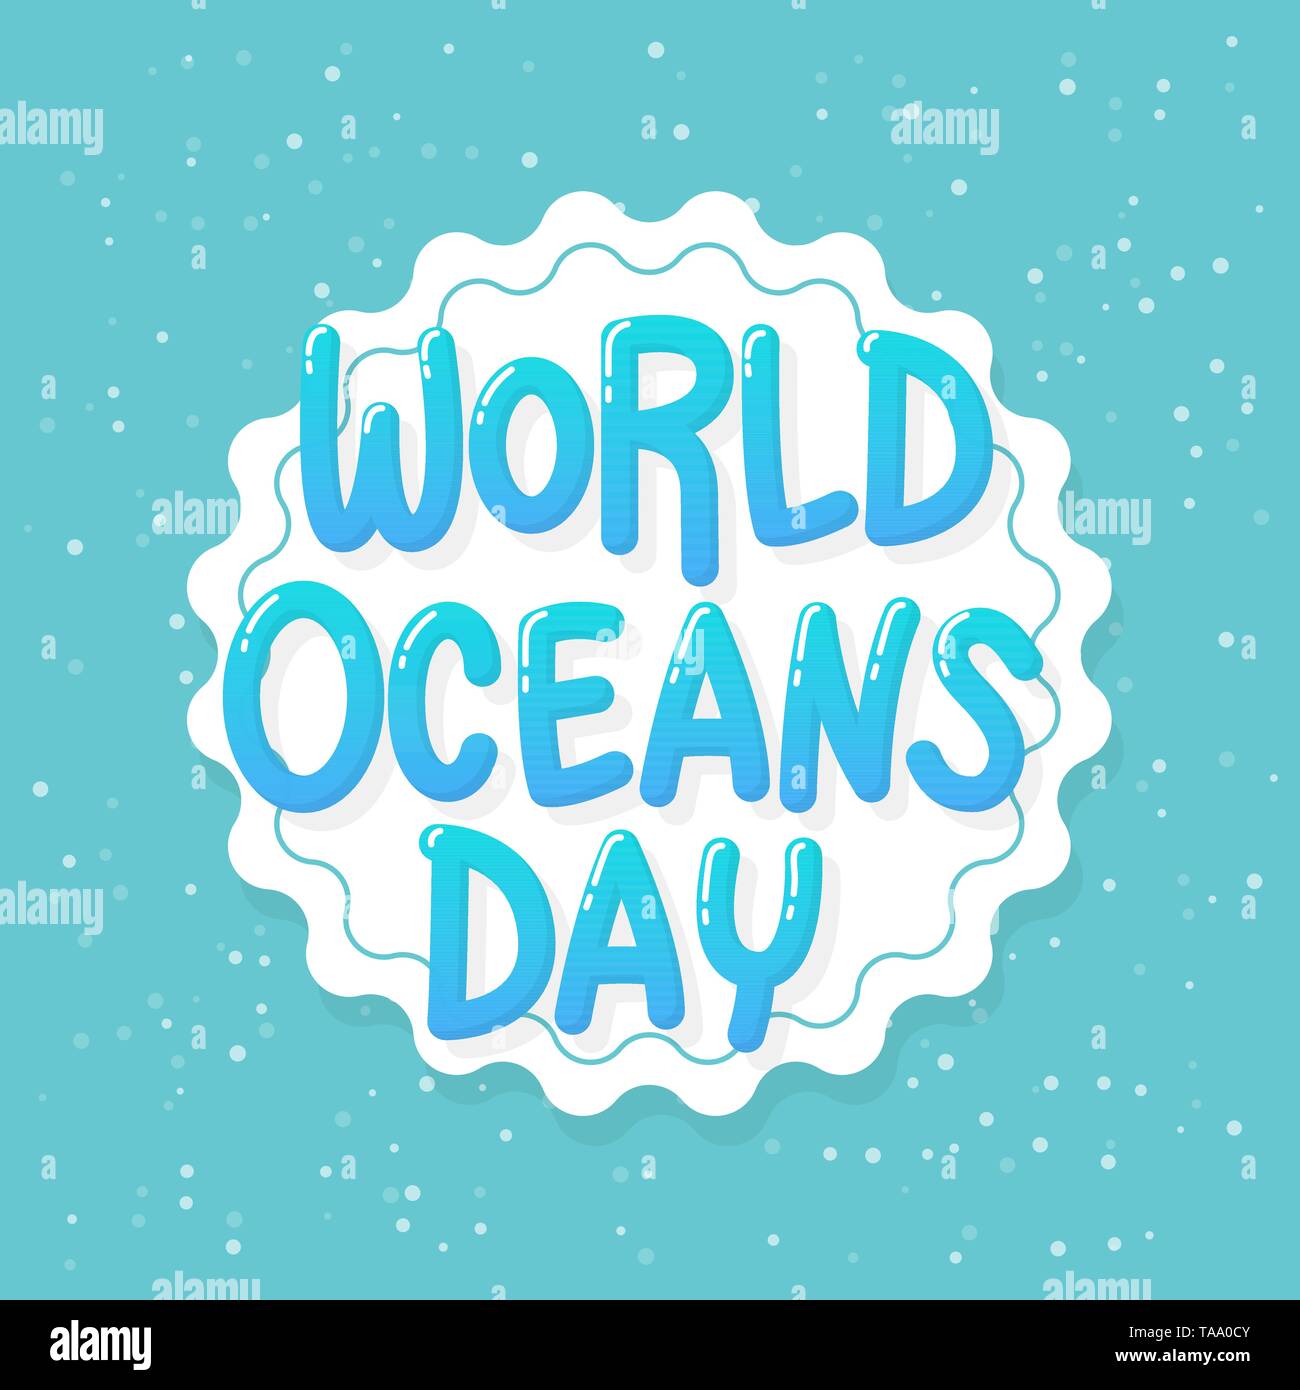 Welttag der Ozeane. 8. juni Feier eingeweiht zu schützen, und die Erhaltung der Weltmeere, Wasser, Ökosystem und informieren die Öffentlichkeit über die Auswirkungen der Hu Stock Vektor